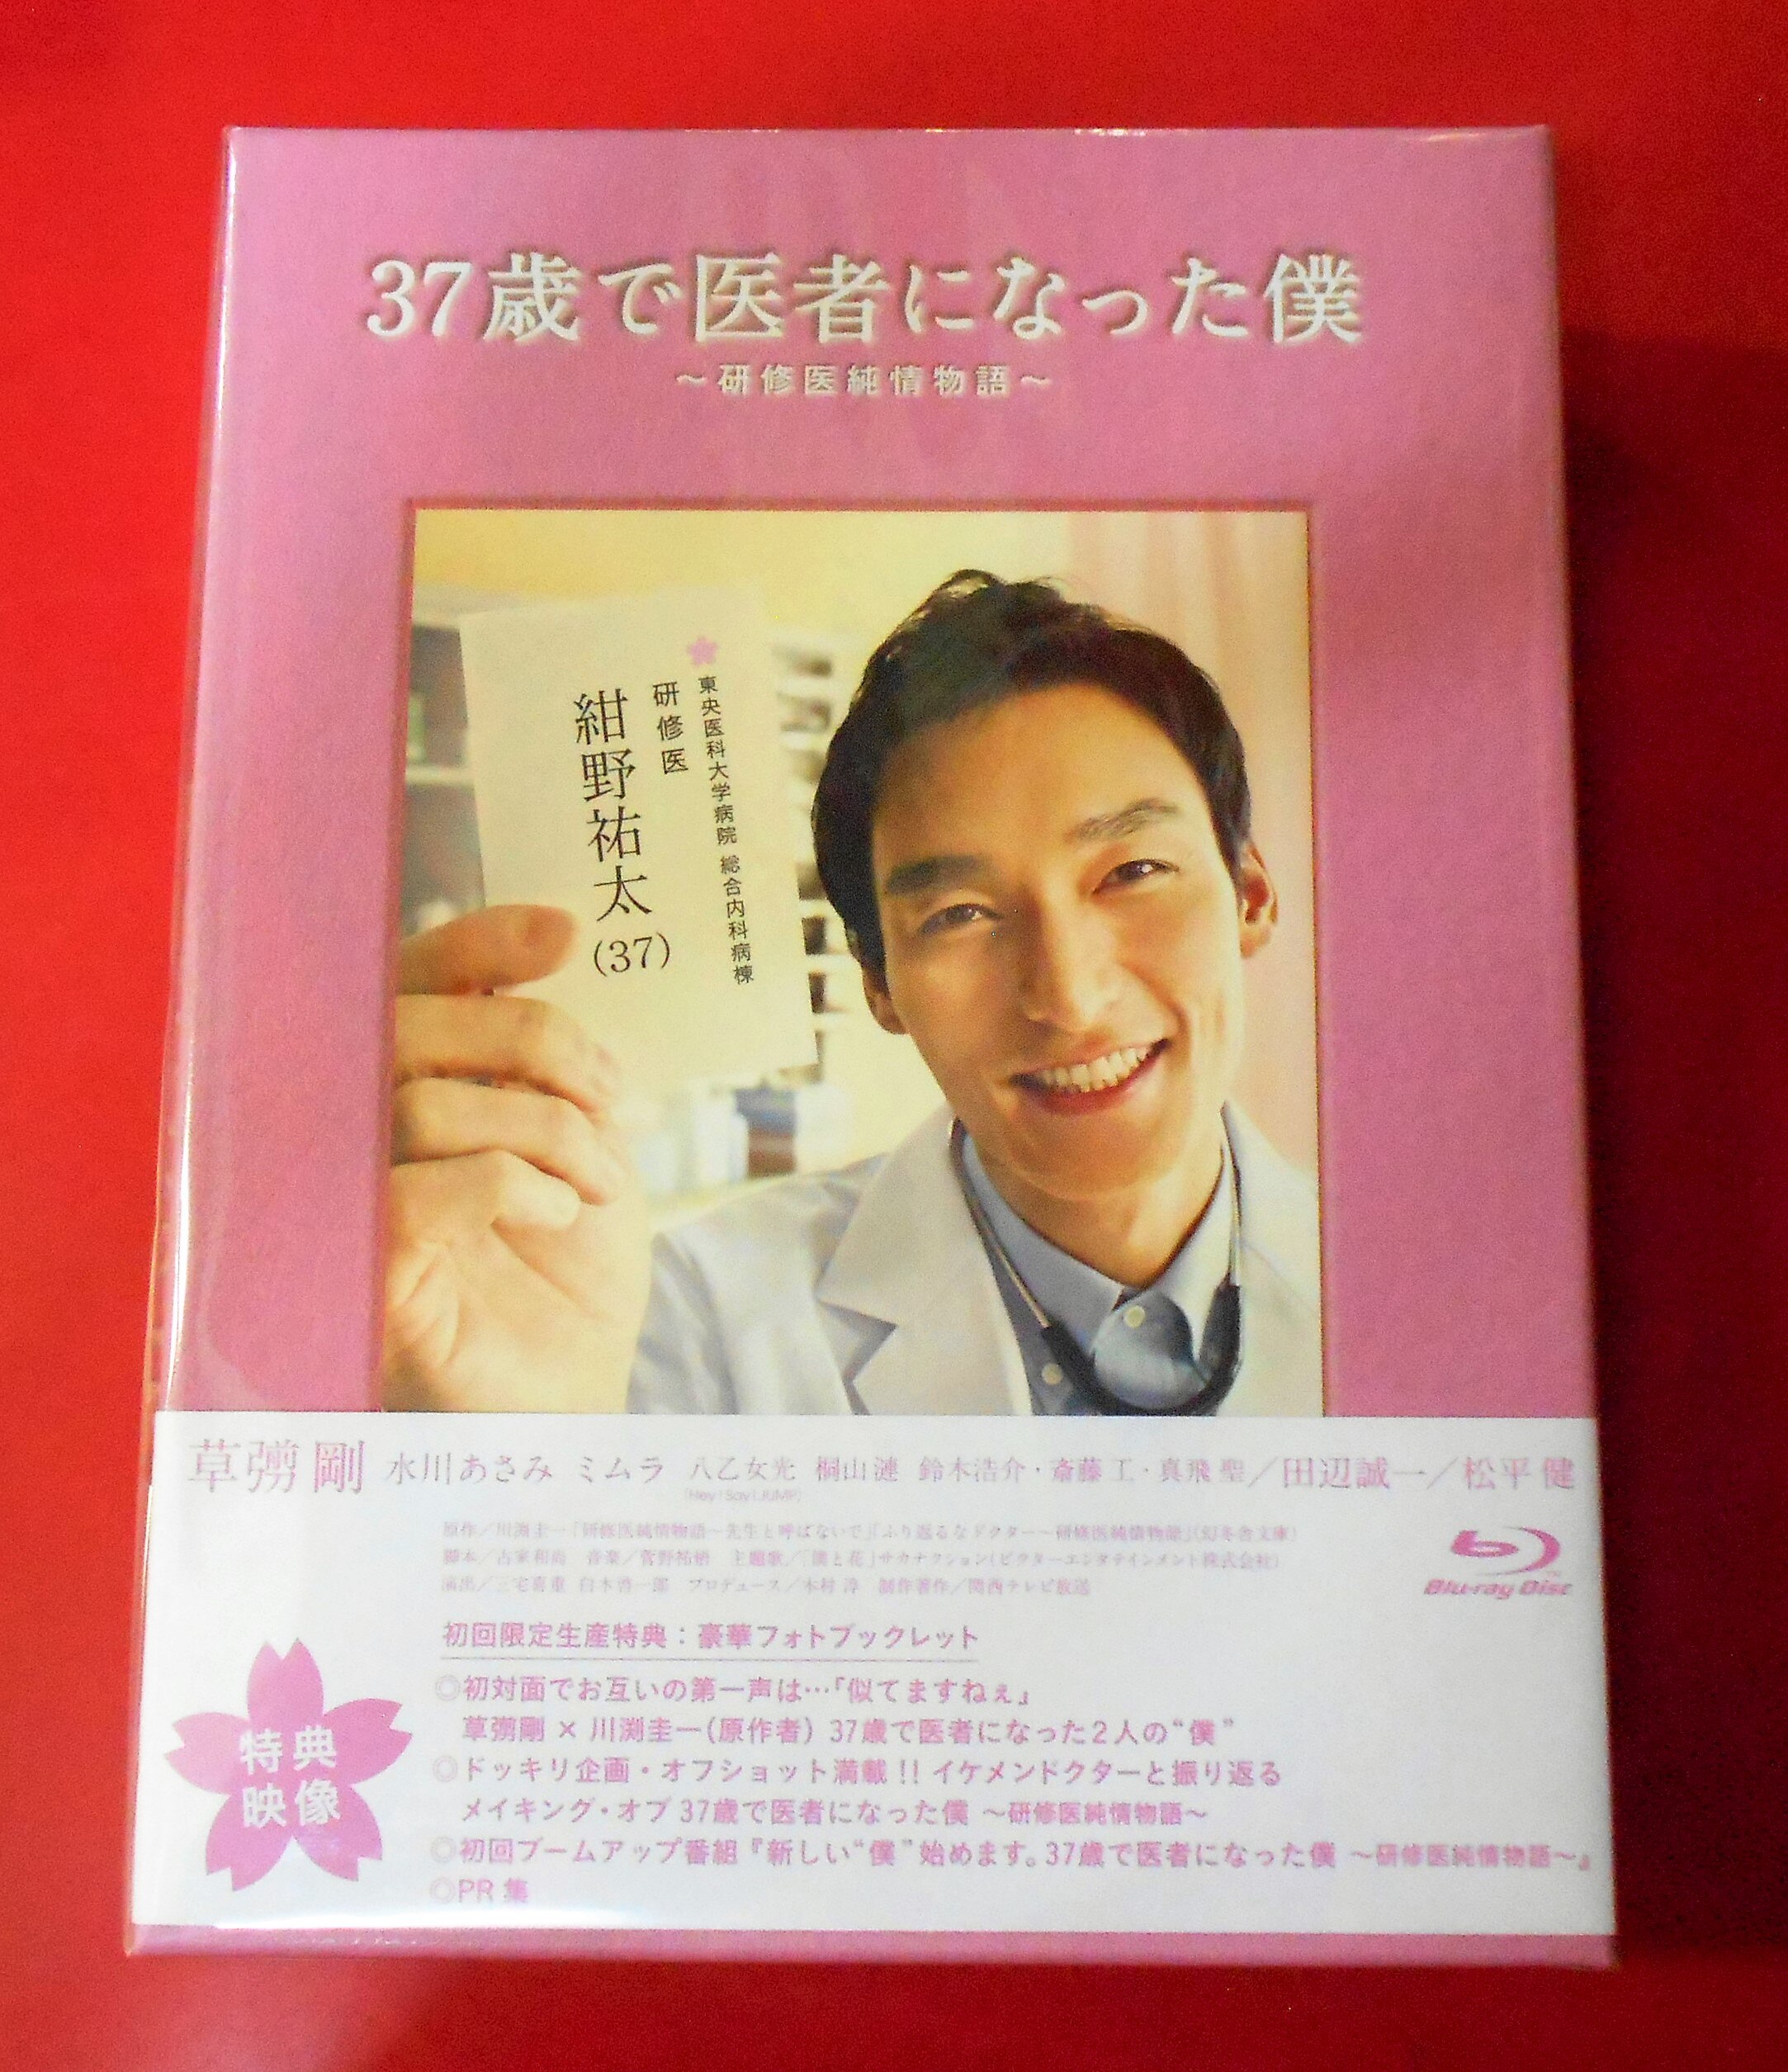 37歳で医者になった僕~研修医純情物語~Blu-ray BOX i8my1cfエンタメ ...